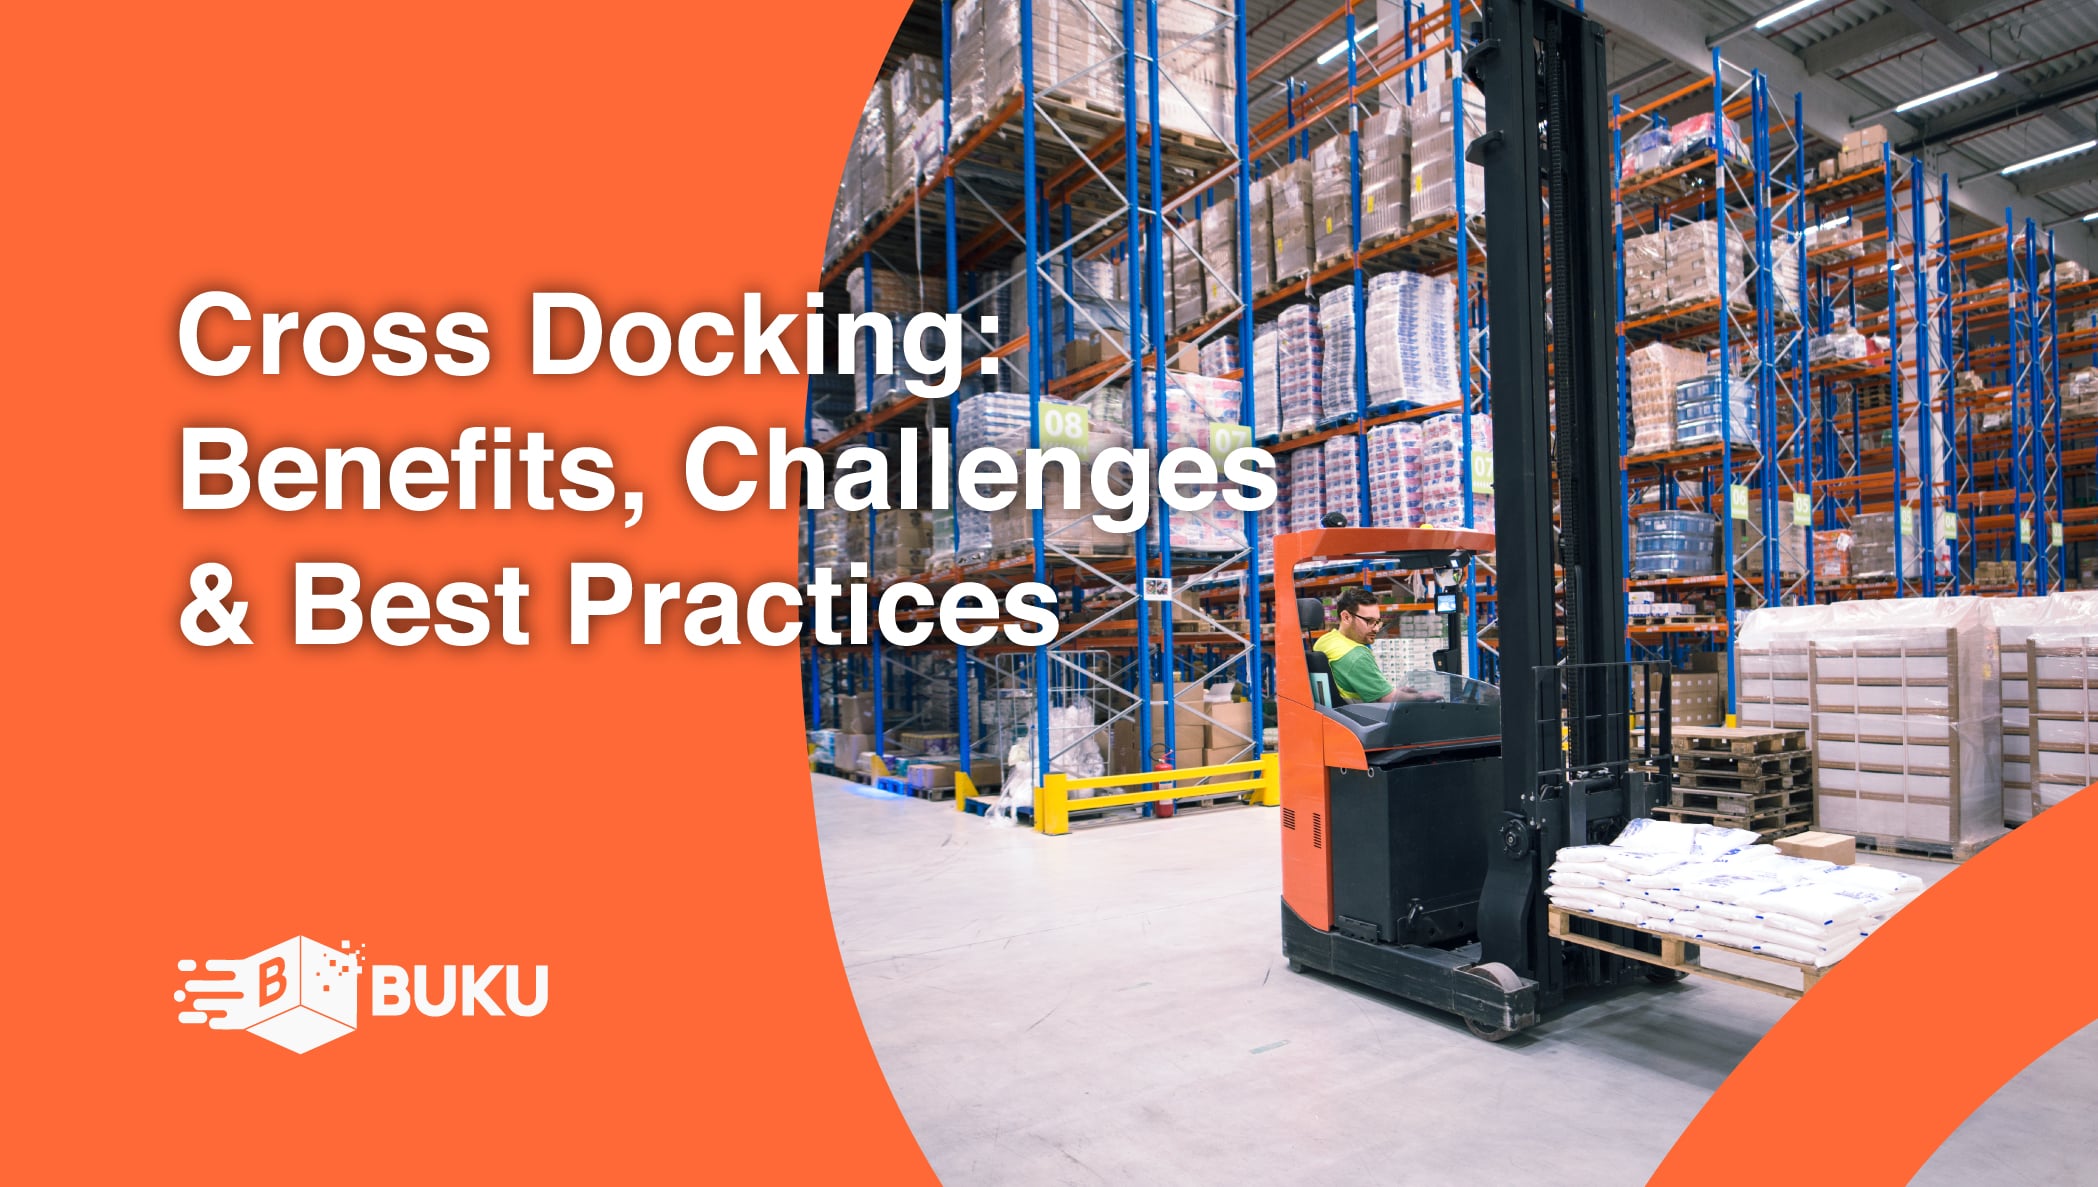 Cross Docking: Benefits, Challenges & Best Practices